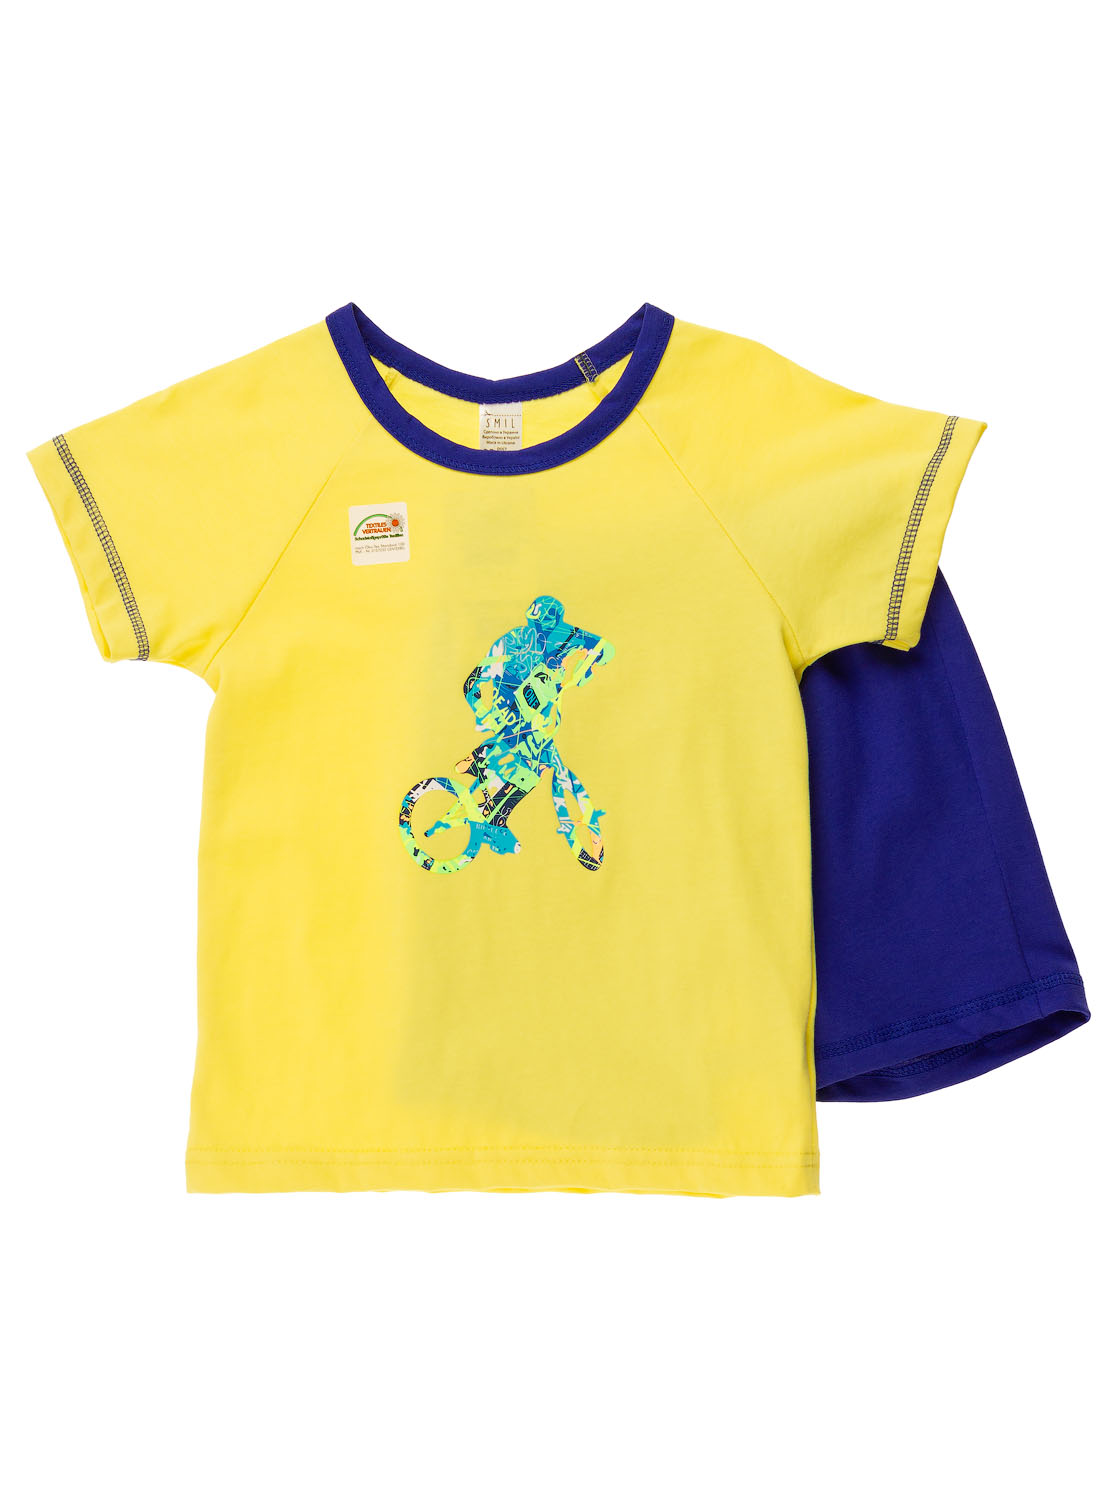 Піжама для хлопчика (футболка + шорти) SMIL жовта 104391 - ціна